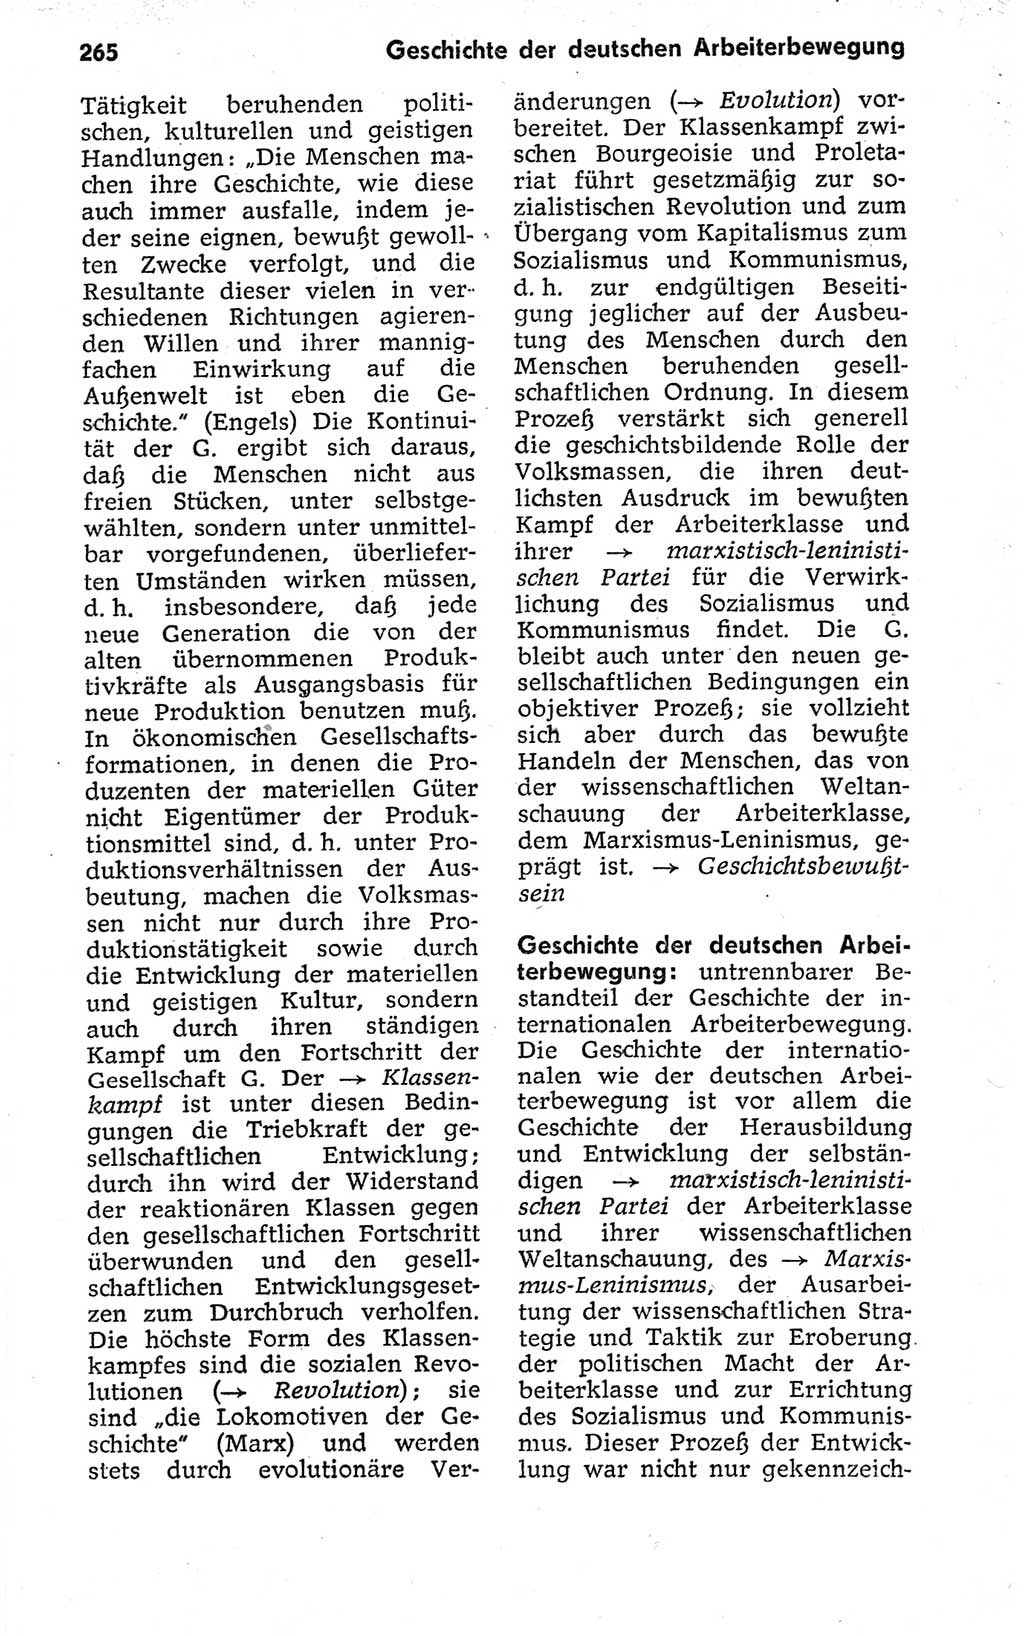 Kleines politisches Wörterbuch [Deutsche Demokratische Republik (DDR)] 1973, Seite 265 (Kl. pol. Wb. DDR 1973, S. 265)